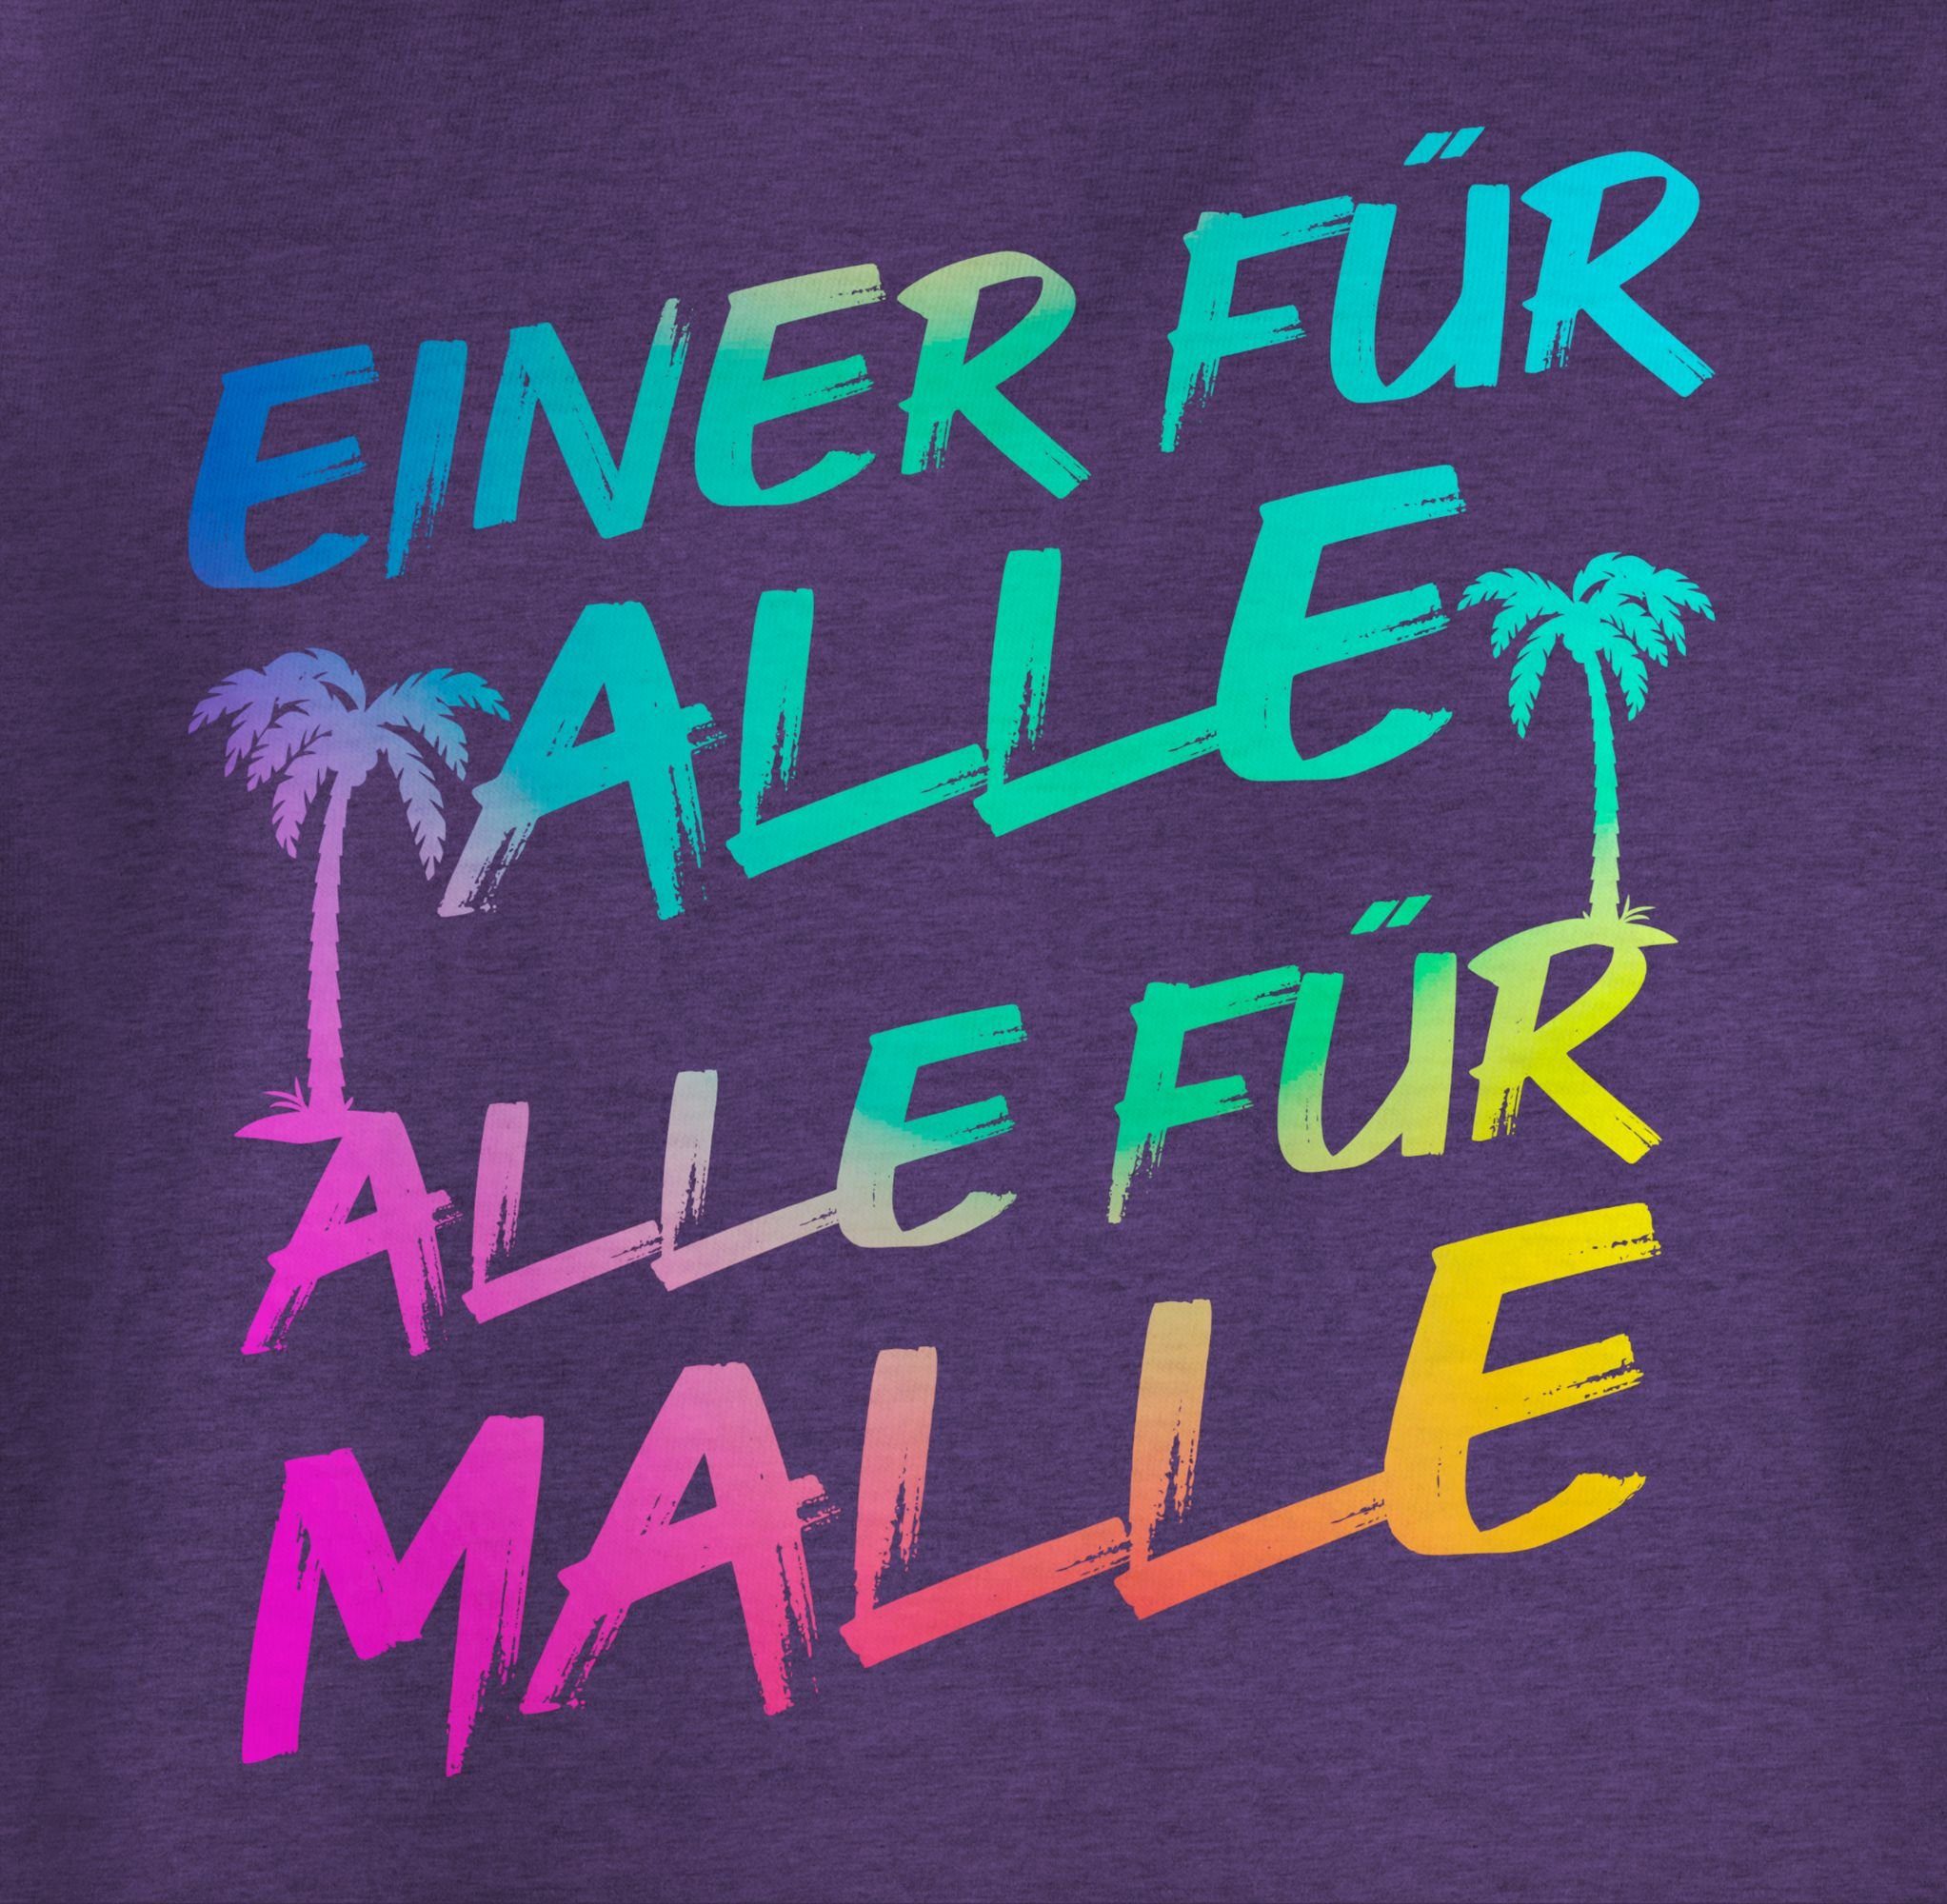 Sommerurlaub Meliert Alle 1 Einer Malle Alle T-Shirt - für alle Malle Mädchen Lila für für Shirtracer